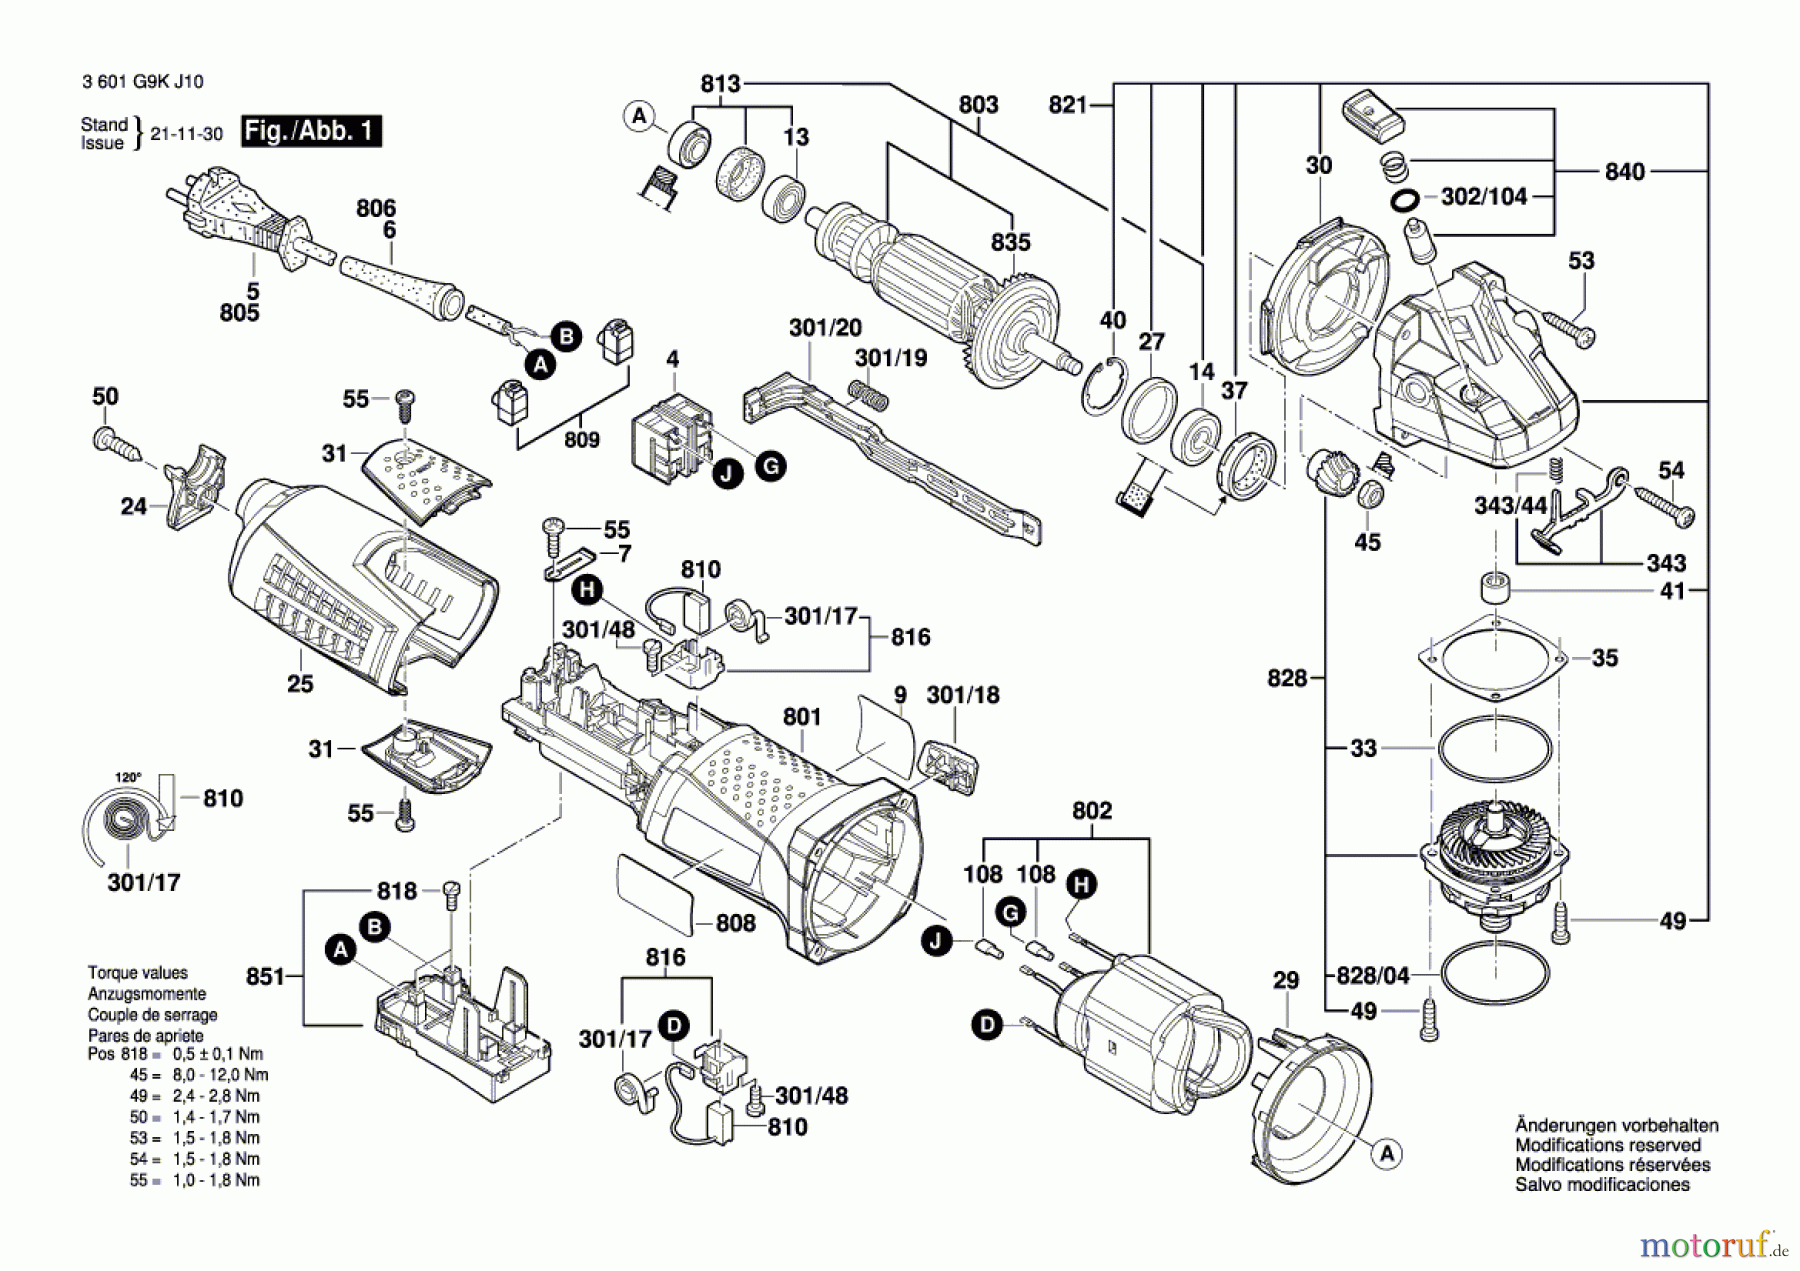  Bosch Werkzeug Winkelschleifer CG 13-150 Seite 1